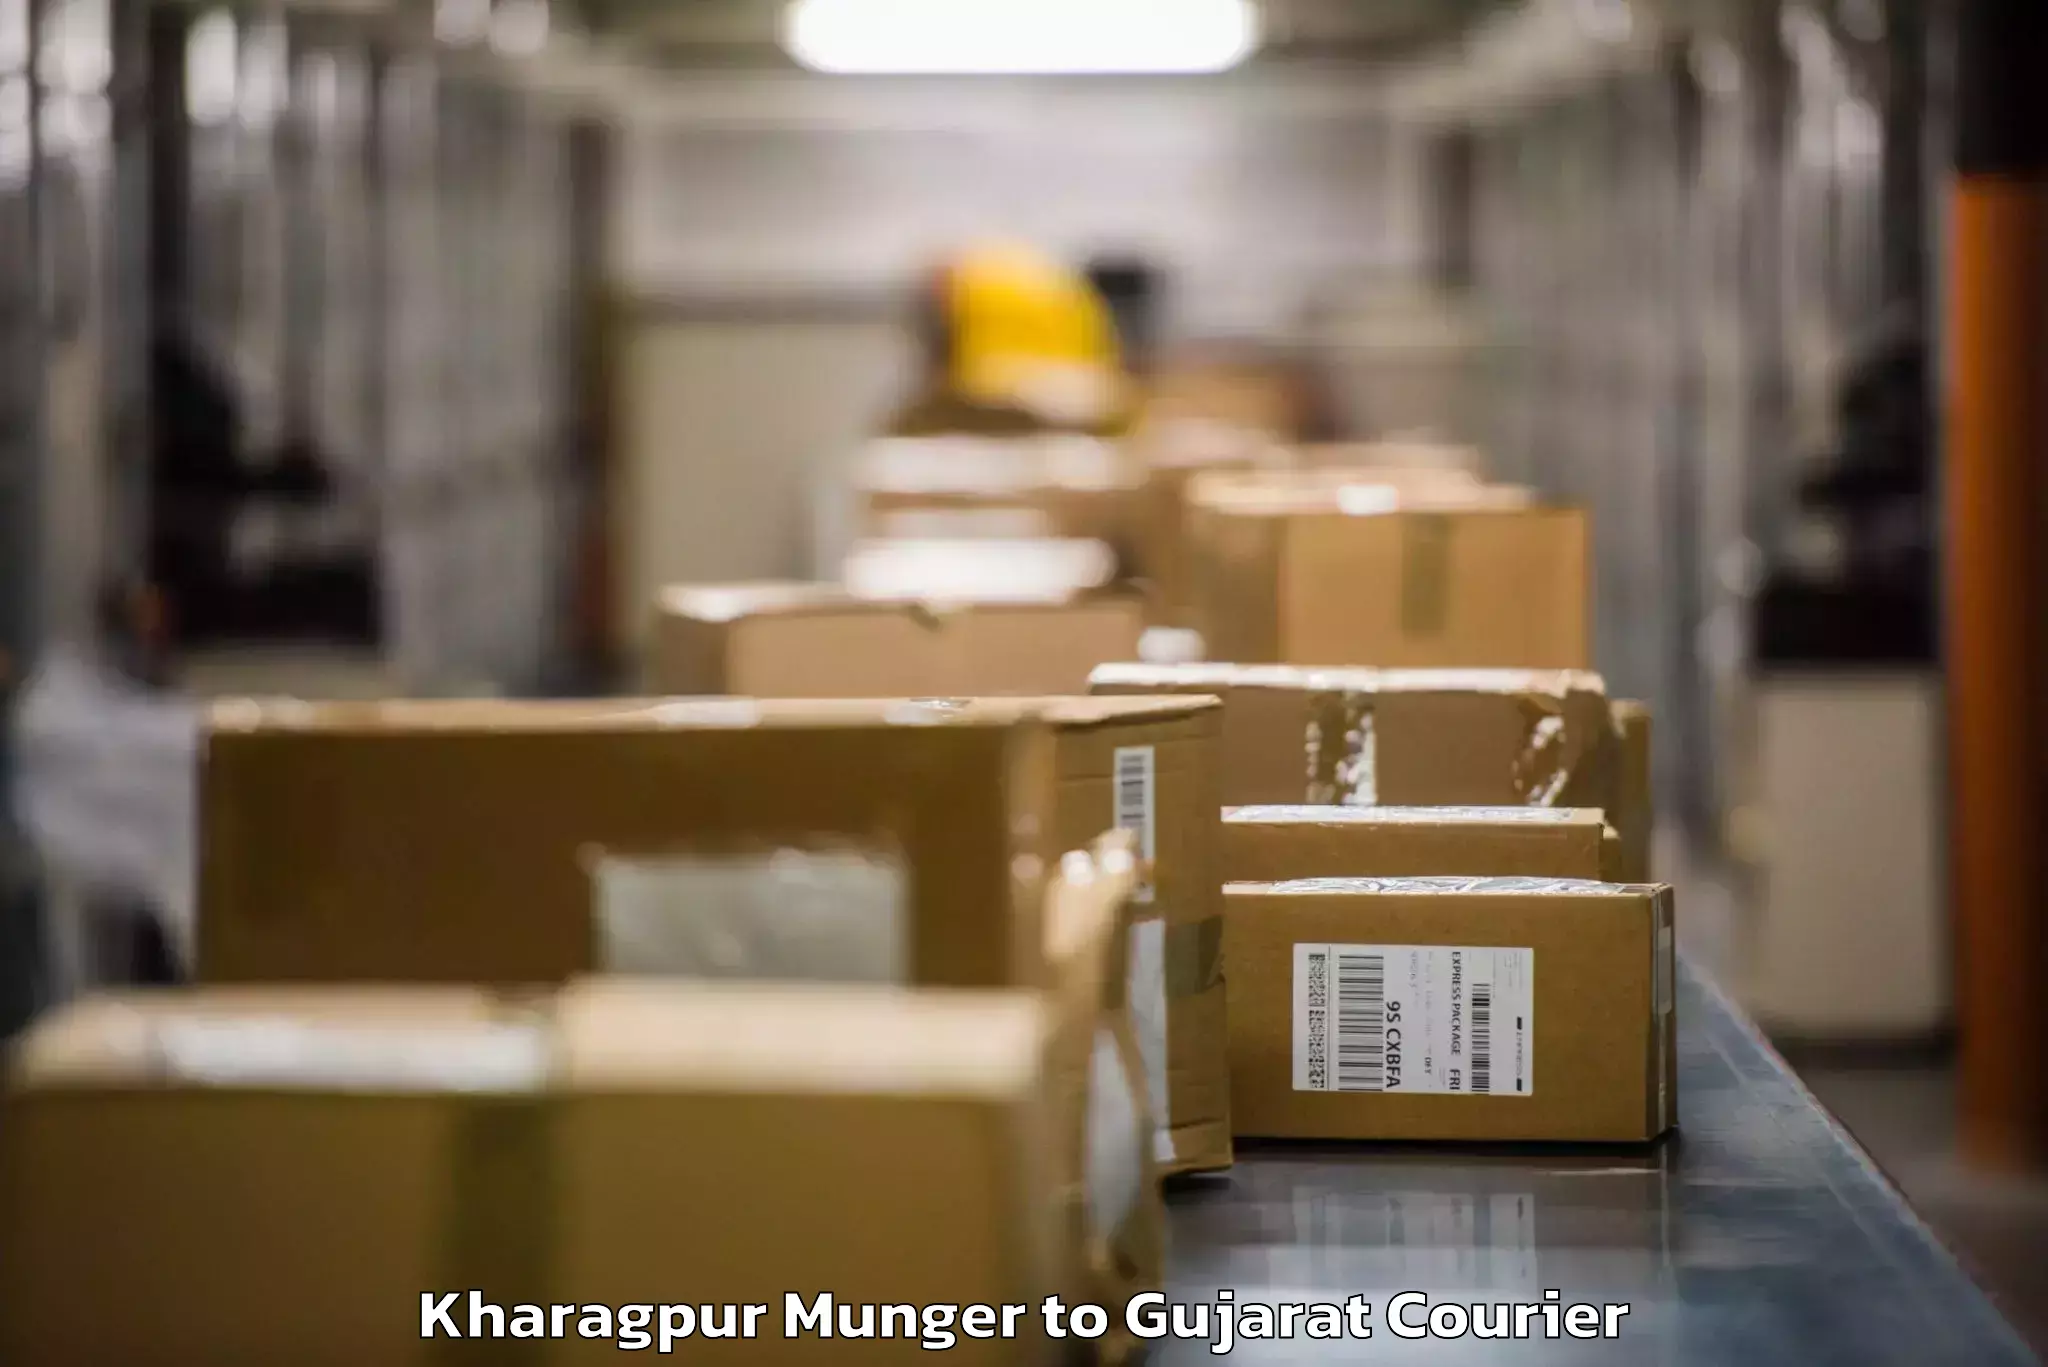 Baggage courier logistics Kharagpur Munger to Katodara